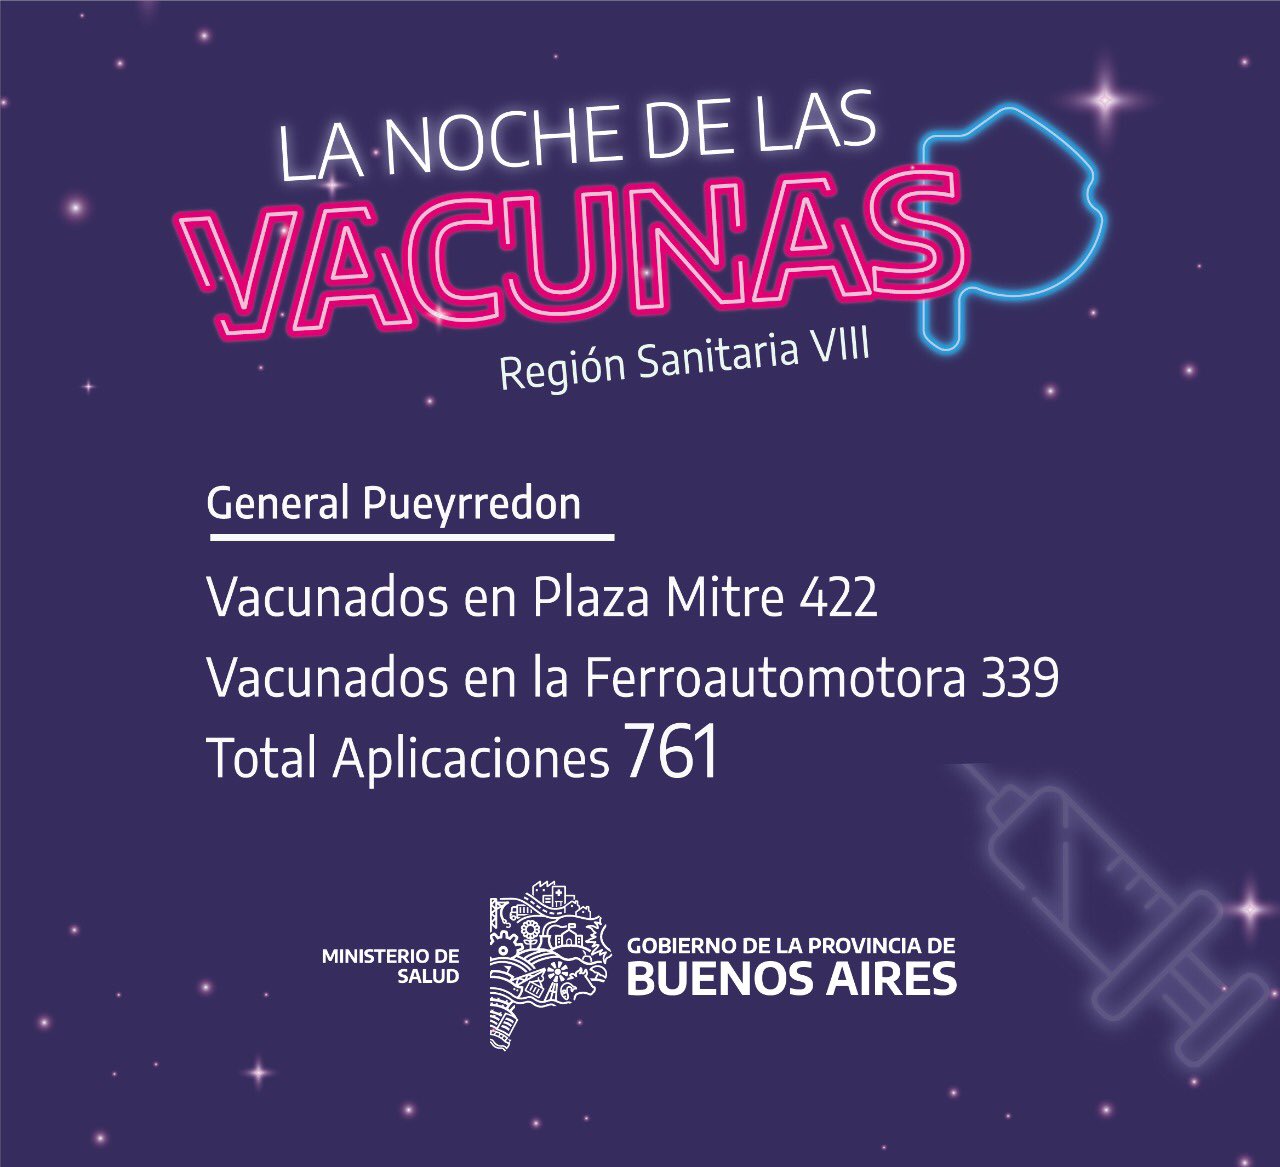 Más de 700 vacunas se aplicaron durante "La Noche de las vacunas" en Mar del Plata